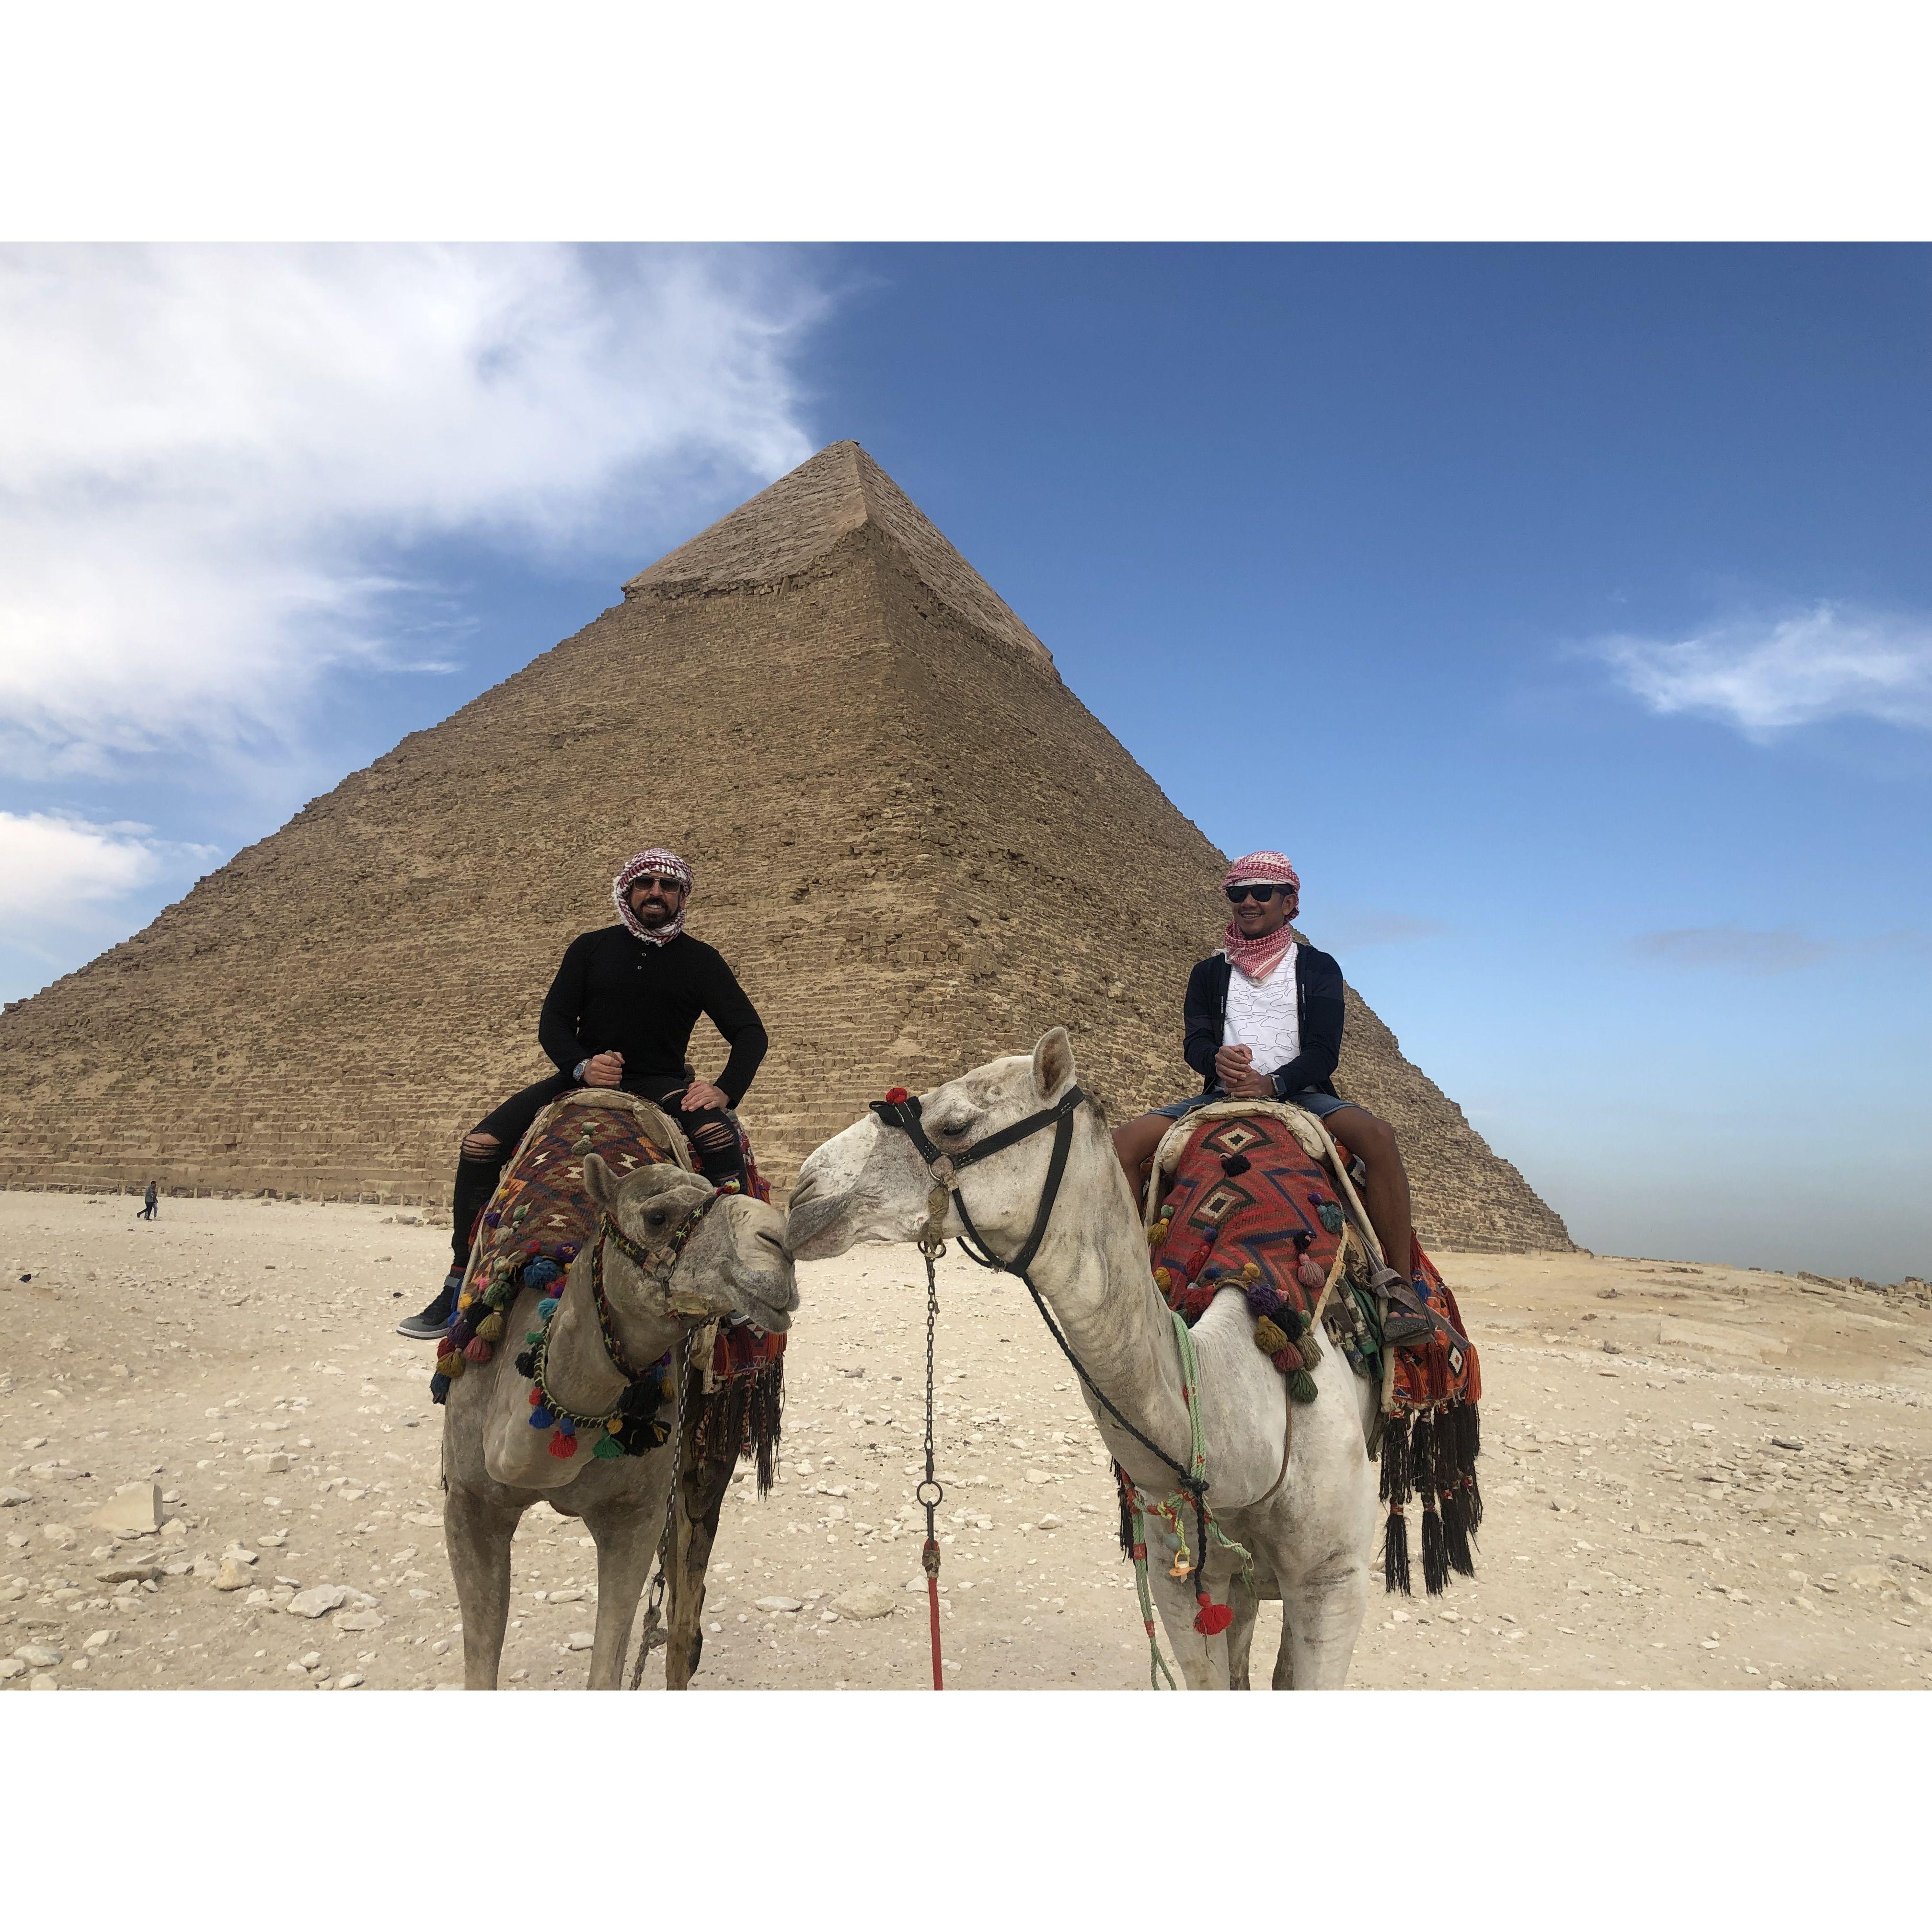 At The Great Pyramid 2018